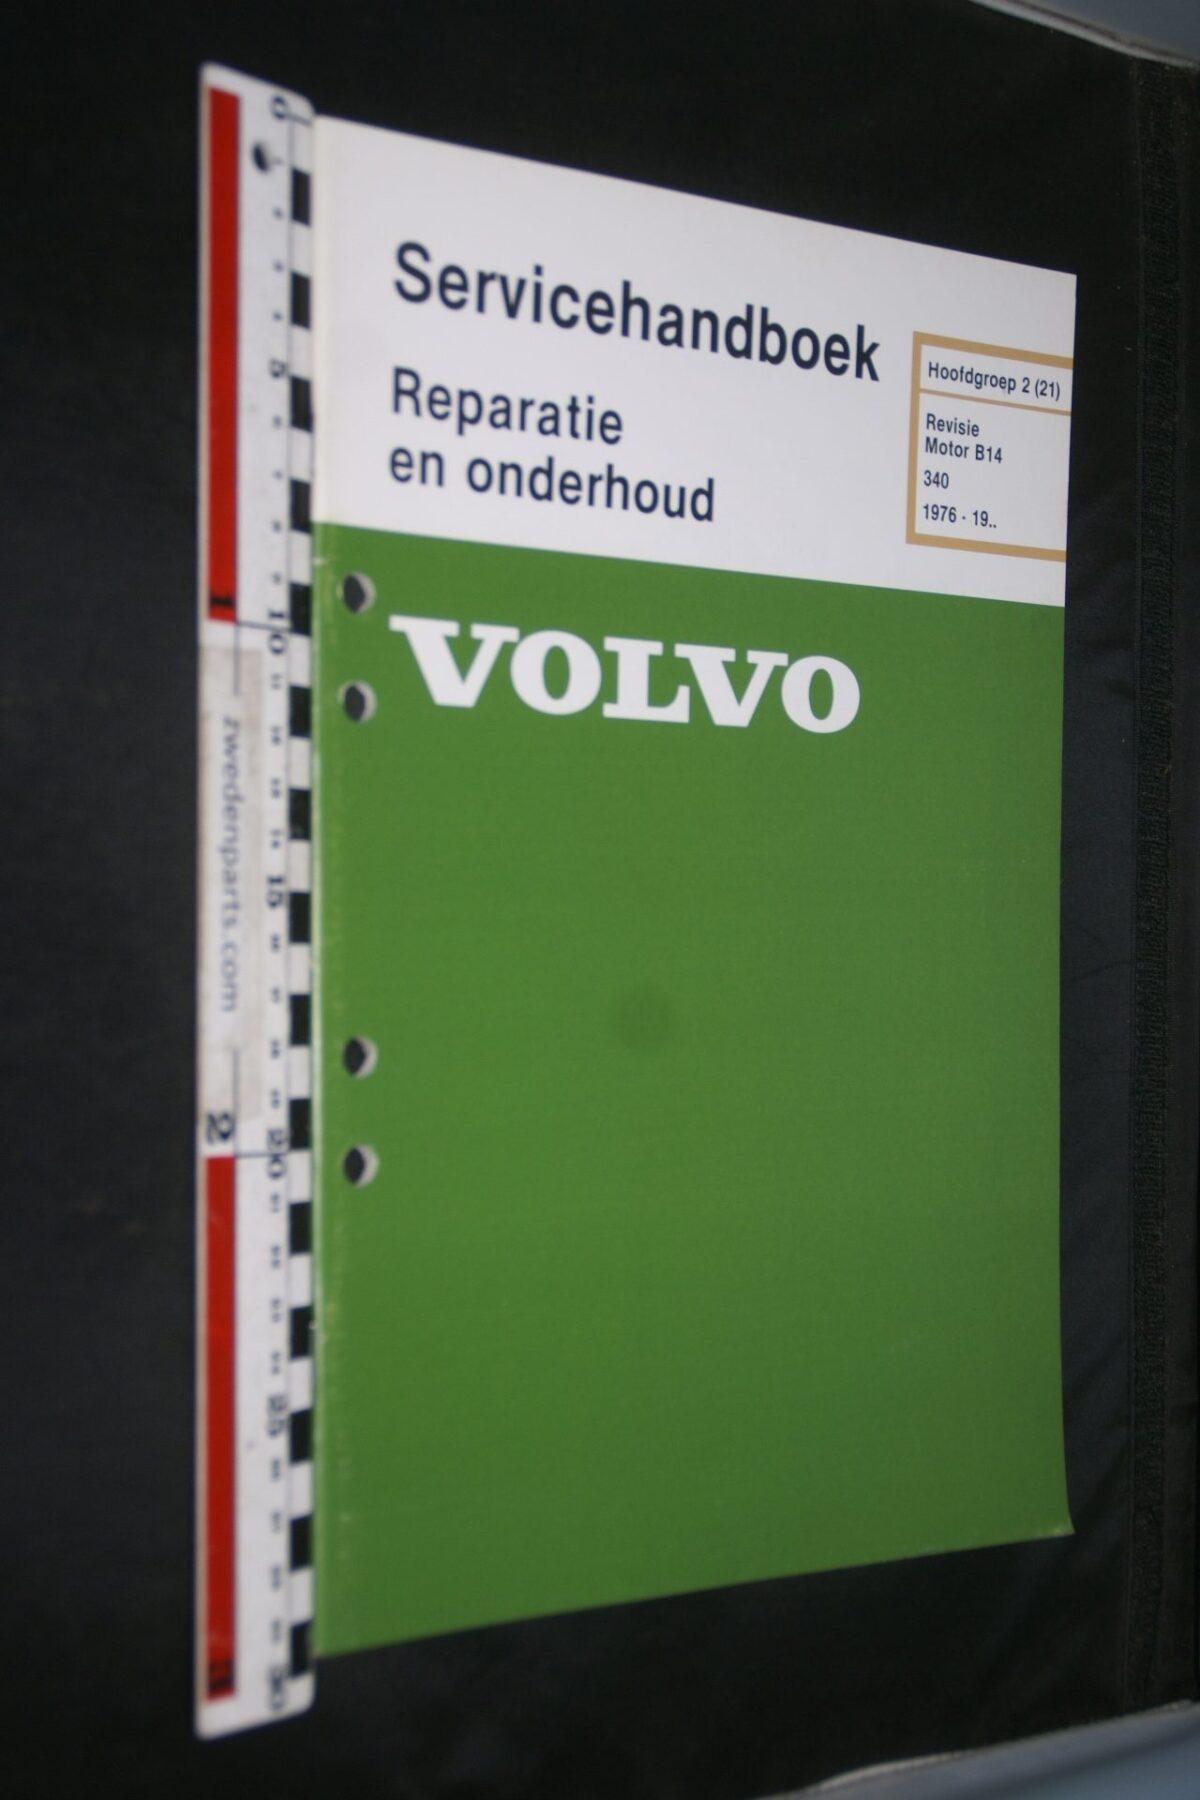 DSC07250 1981 origineel Volvo 340 servicehandboek  2(21) motor B14 1 van 800 TP 35067-1